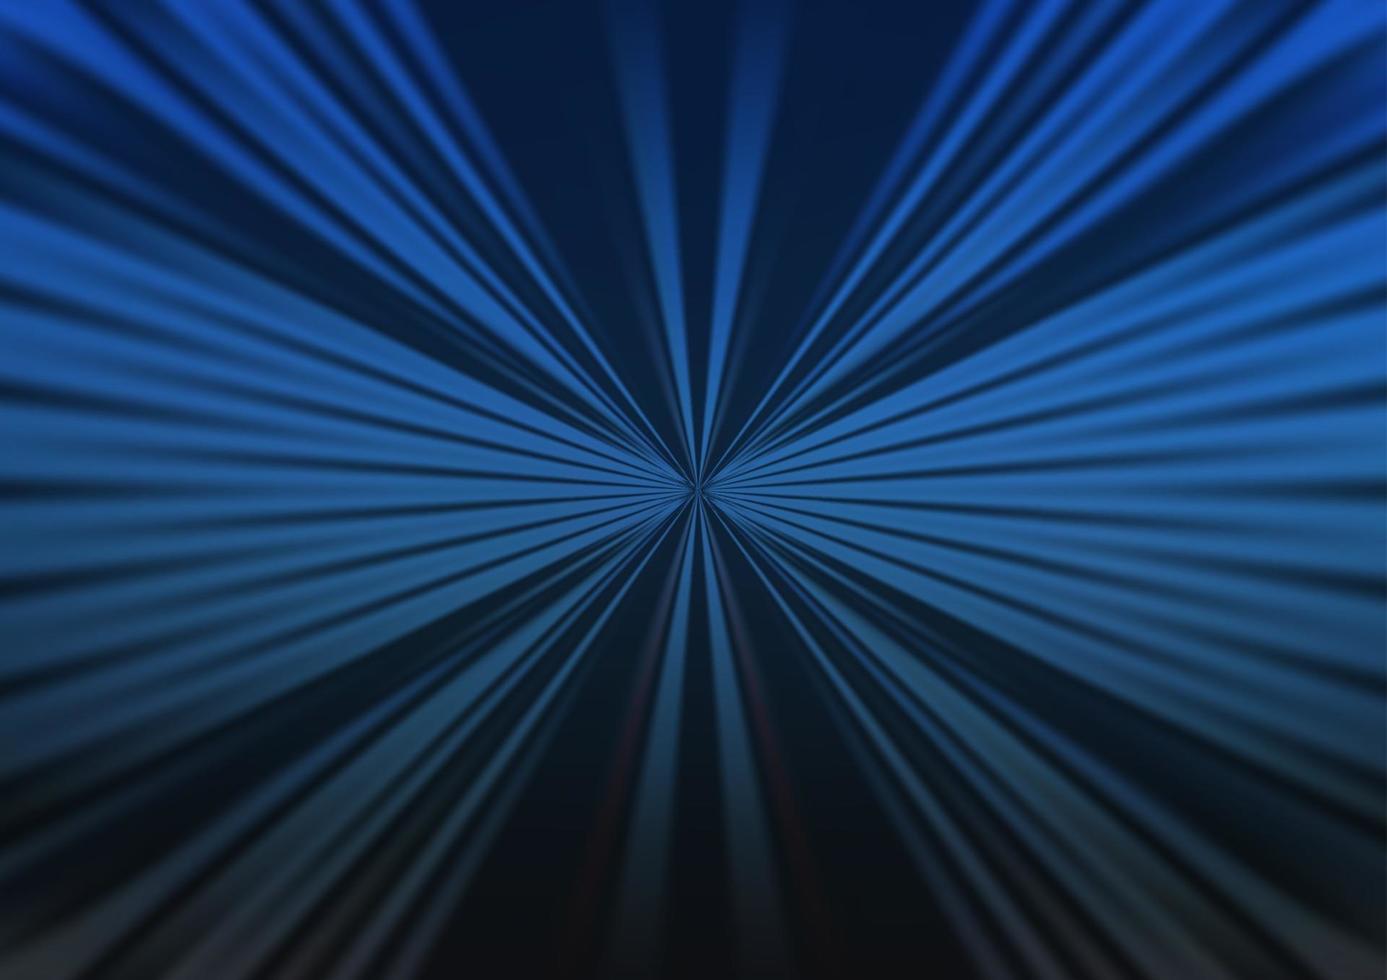 motif vectoriel bleu foncé avec des lignes étroites.